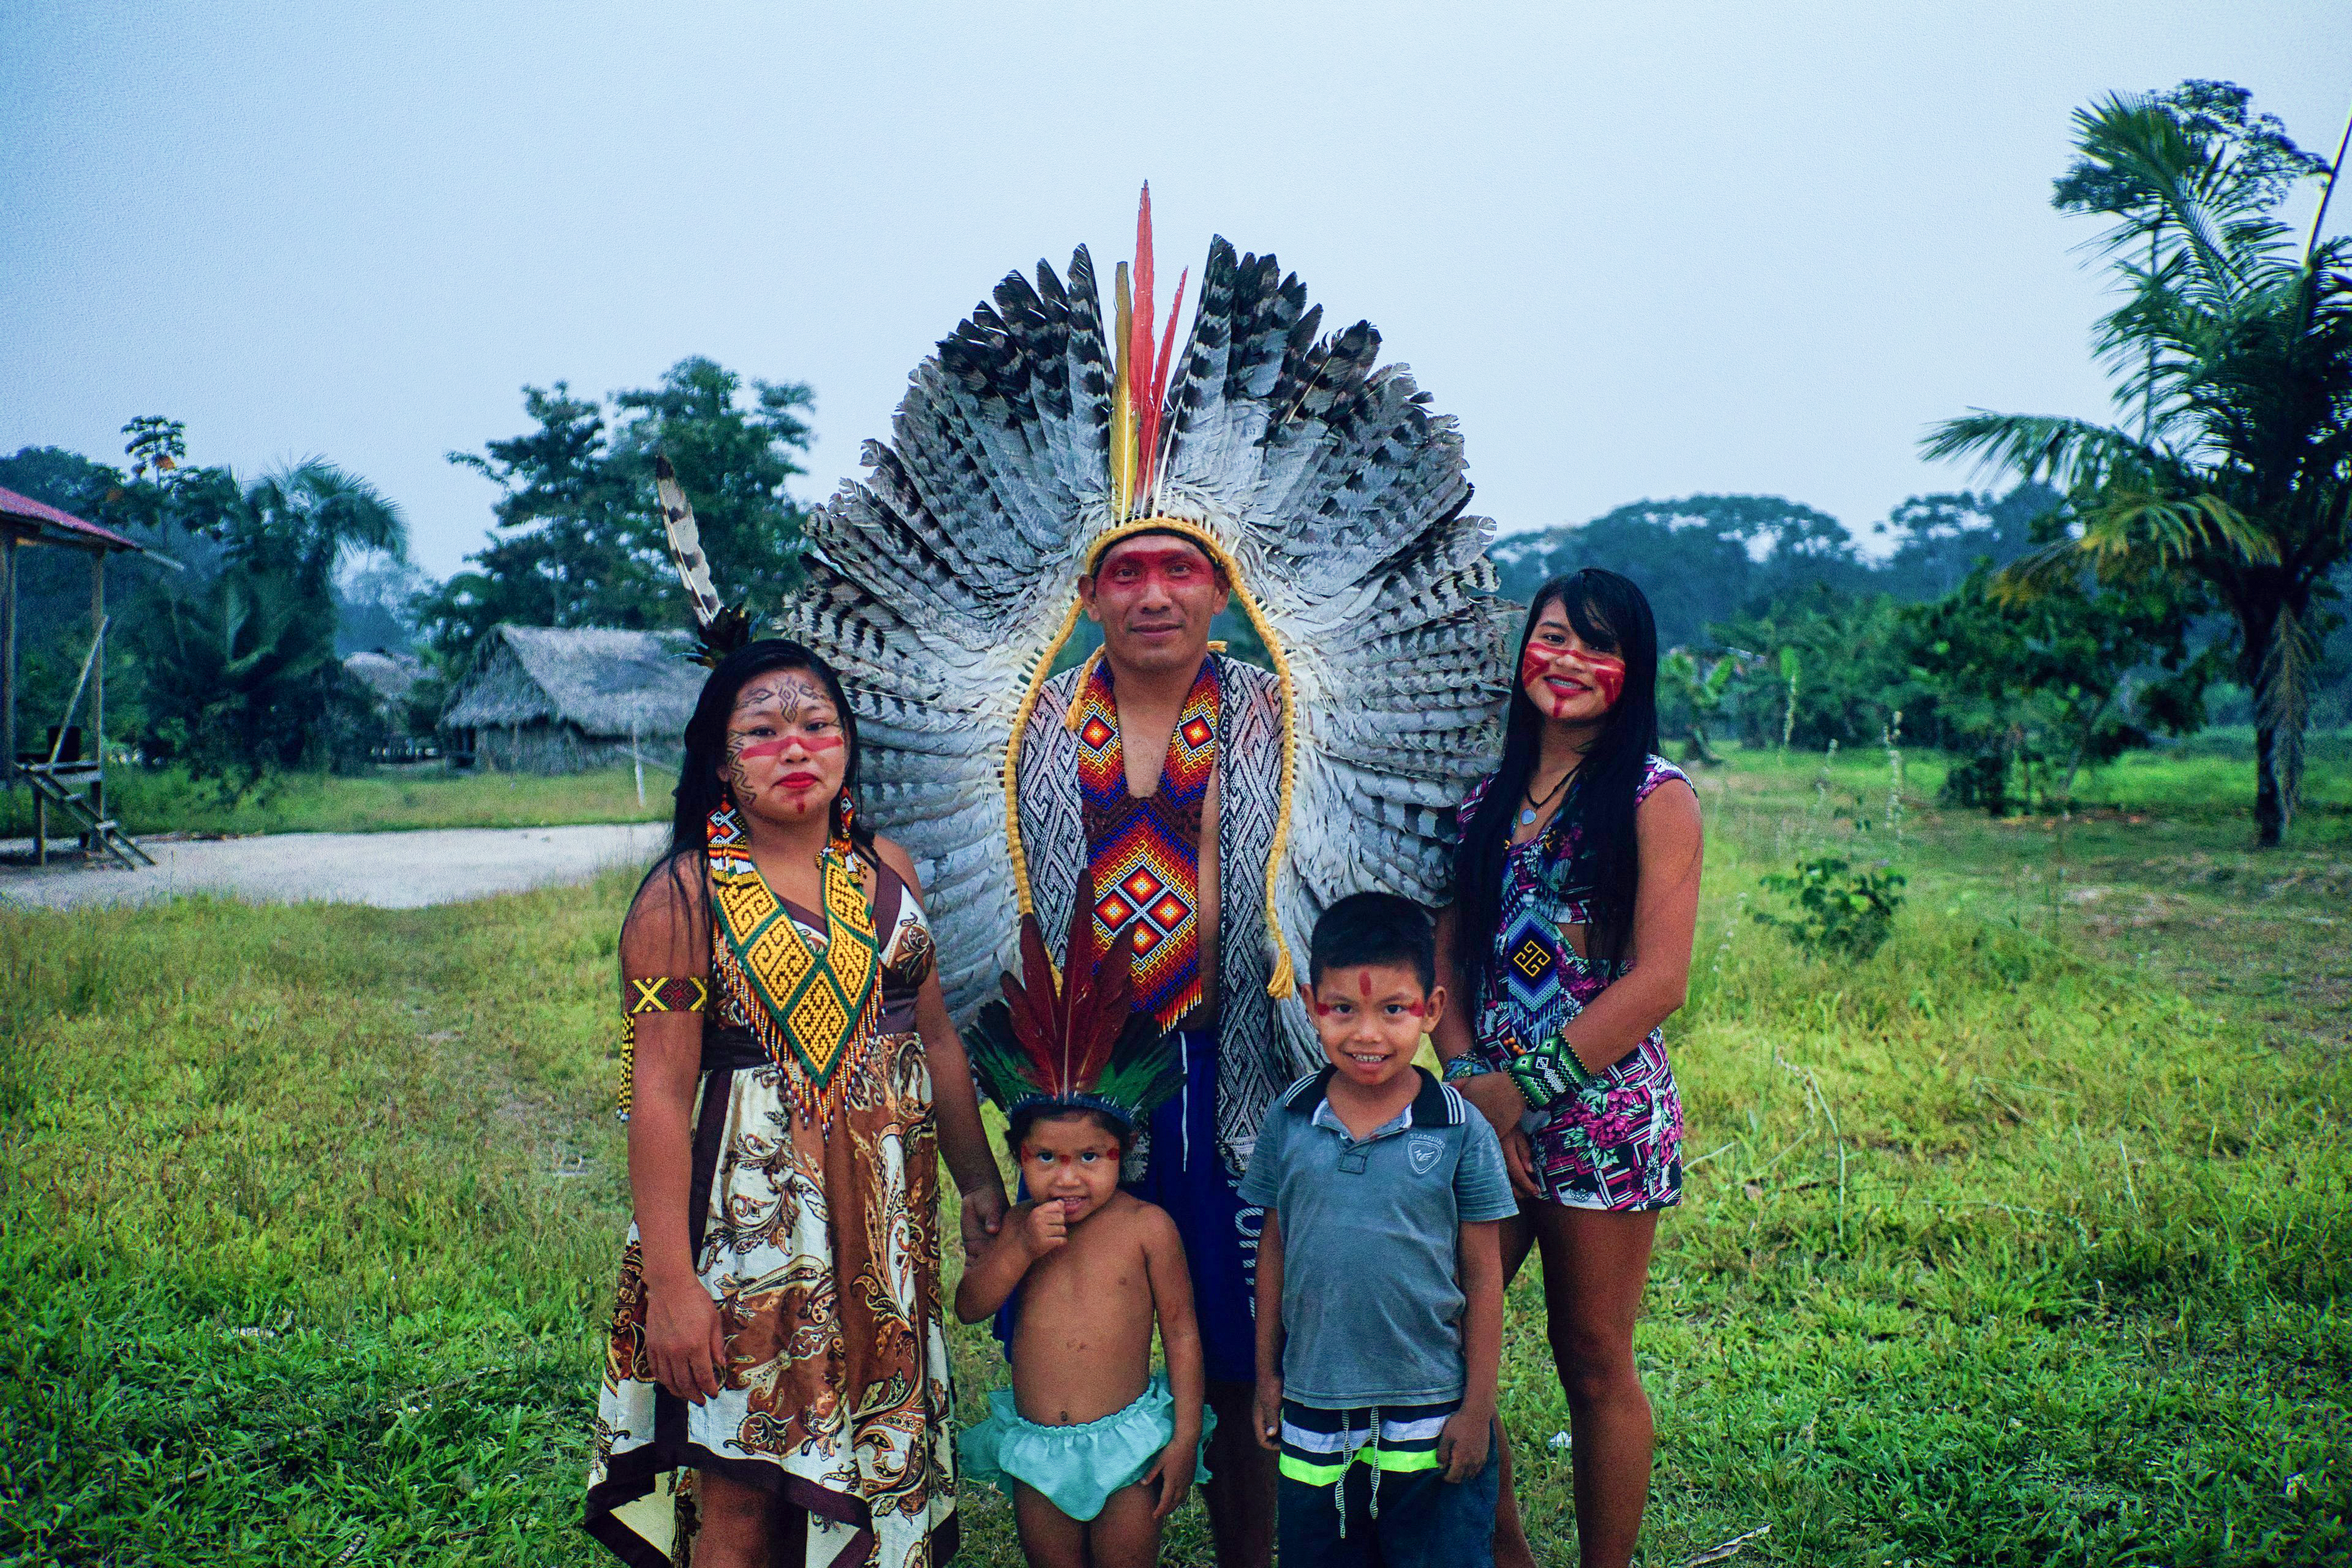 Photo : Guilherme Meneghelli, sur l'image le leader Nui Huni Kuin, sa femme Txima Aldeneide, son fils Ninawa abraão, sa fille Thainá maspã, du village Txana ury, Igarapé do Caucho, ACRE, Brésil.